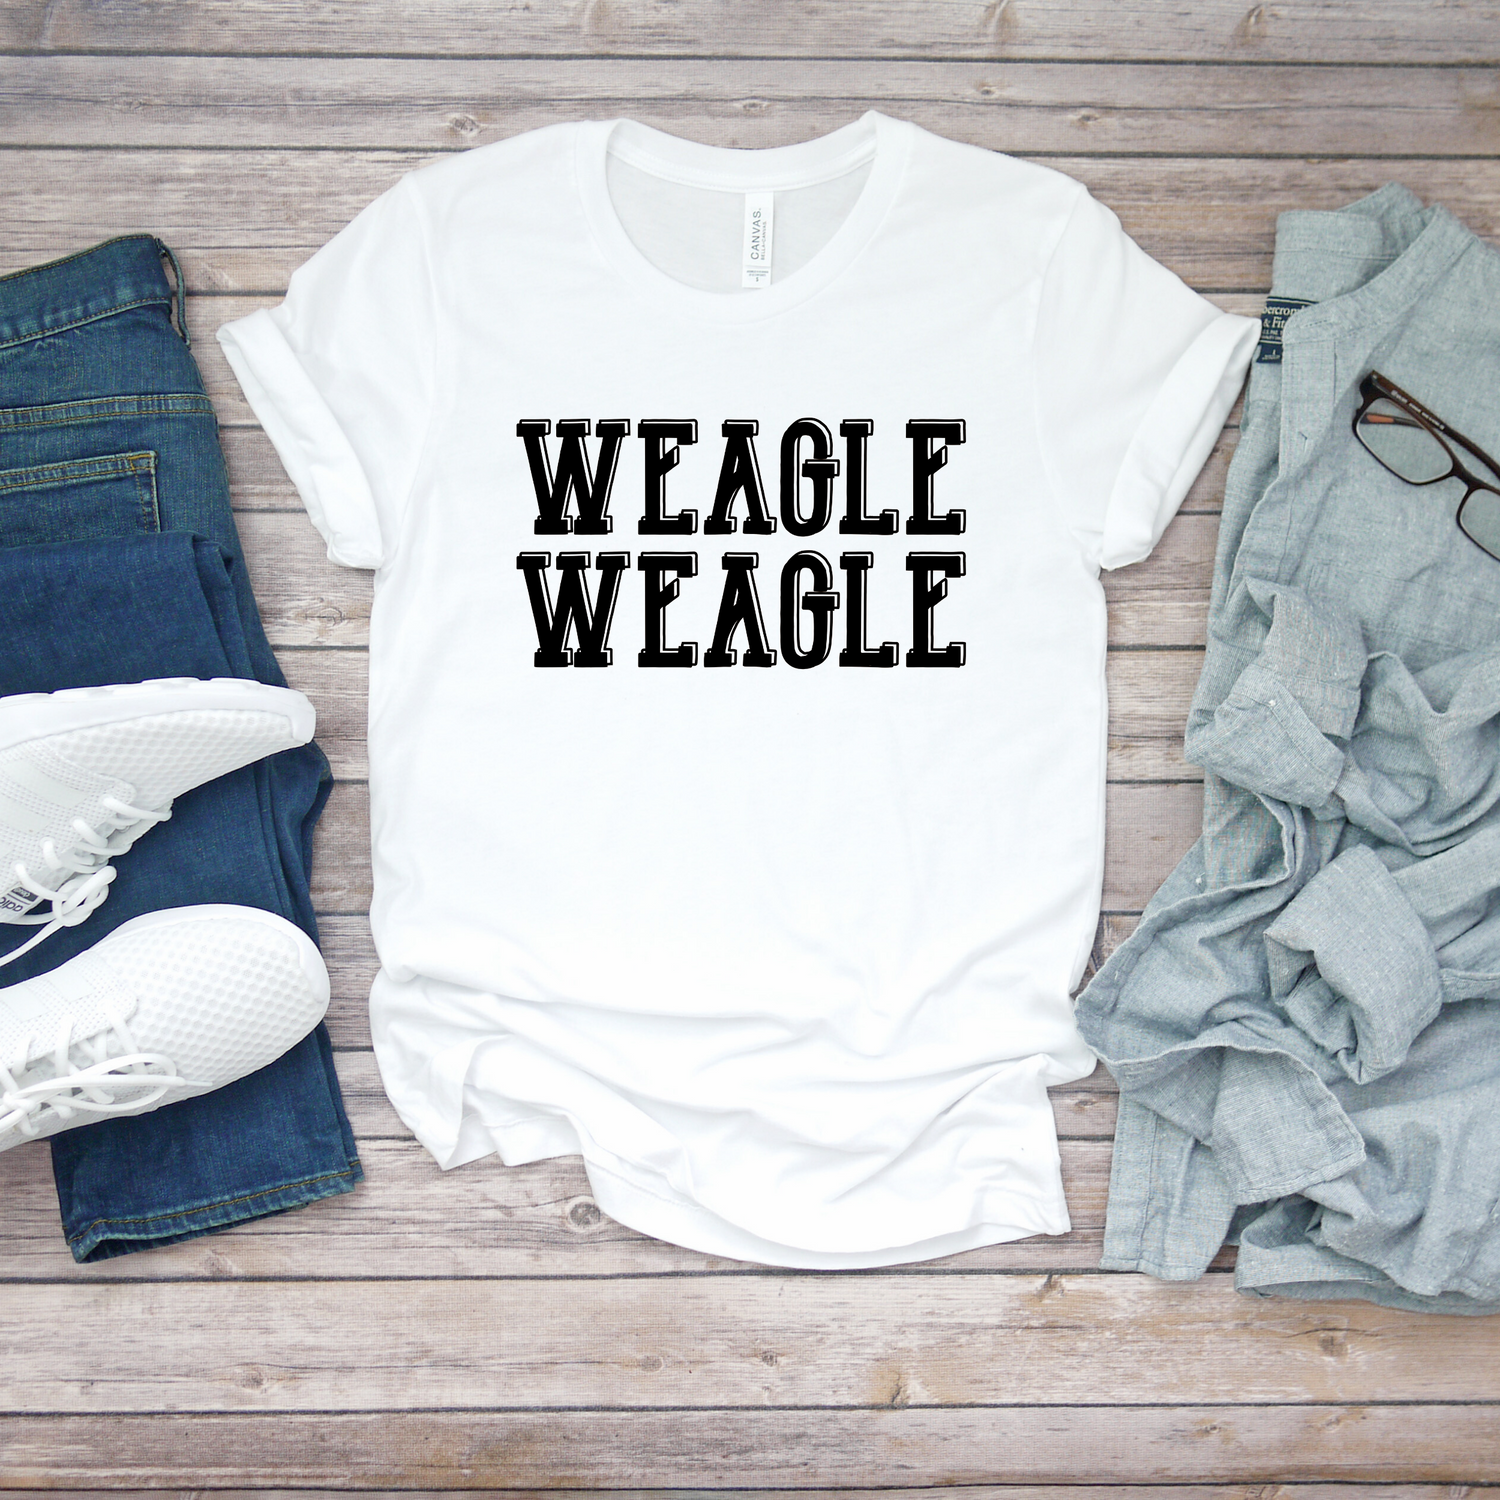 Weagle Weagle Auburn Game Day Shirt - Teegarb